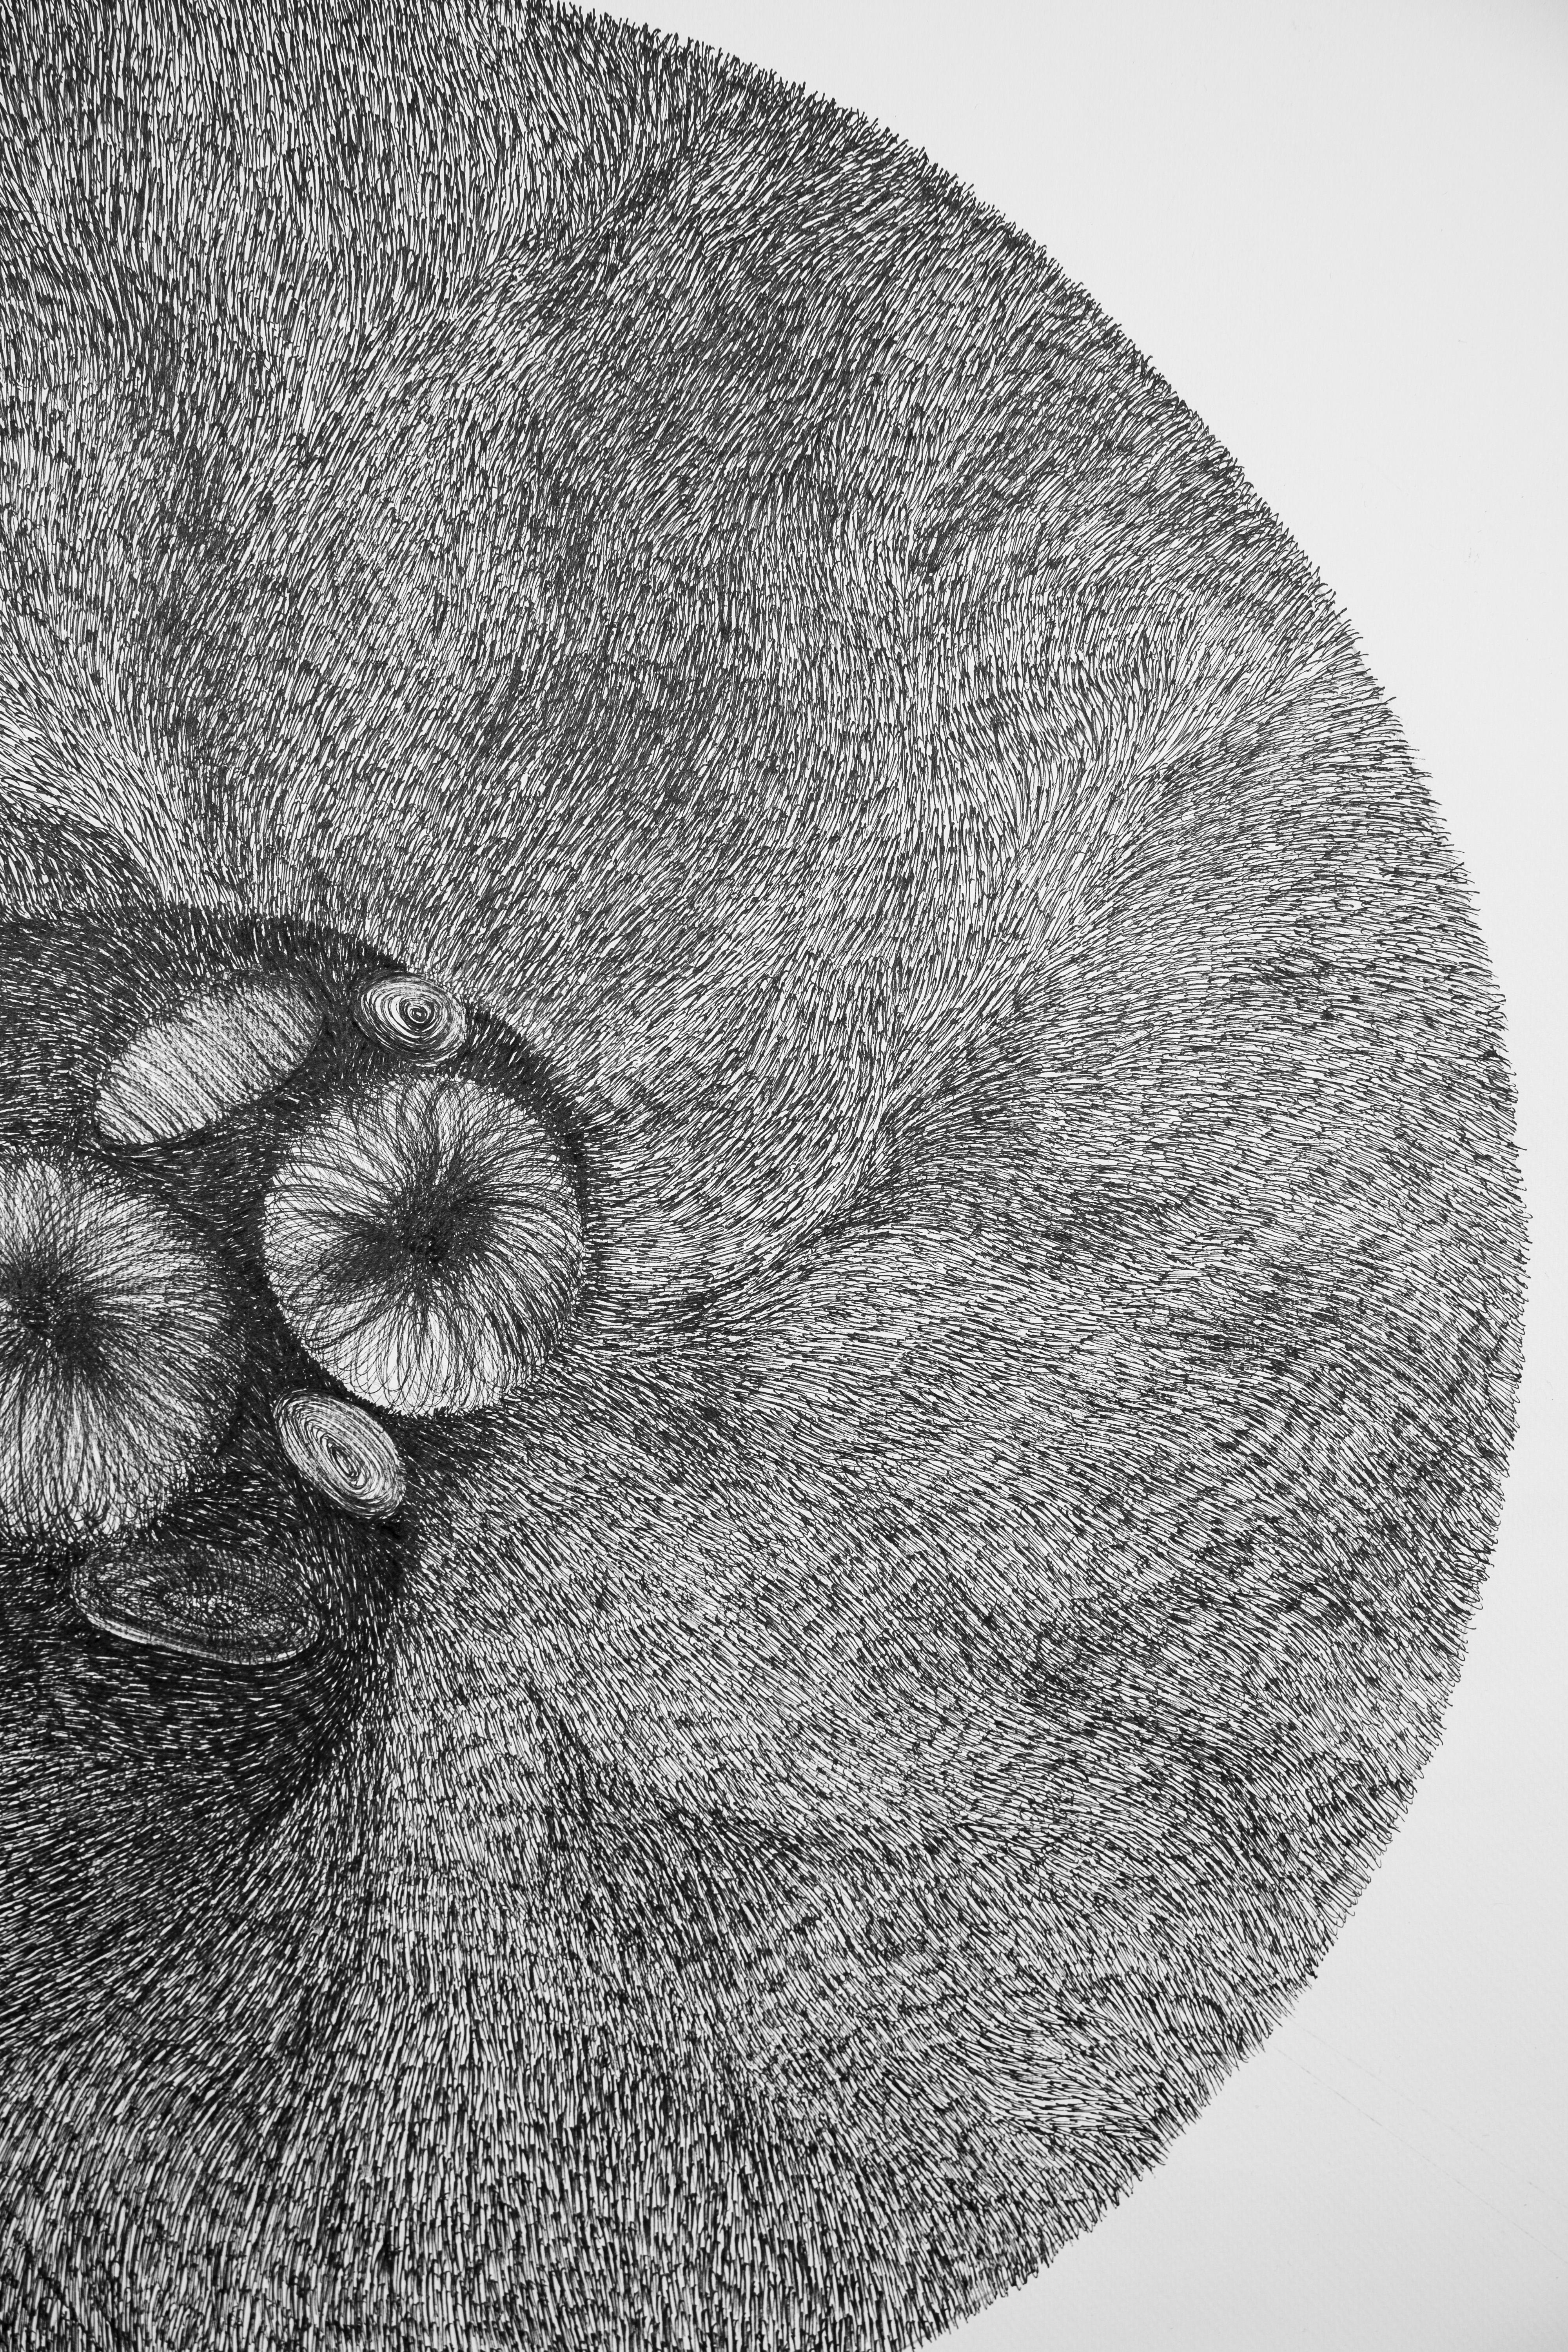 Cell 02 - Zeitgenössisch, Schwarz-Weiß, Zeichnung, Konzeptionell (Grau), Abstract Drawing, von Alina Aldea